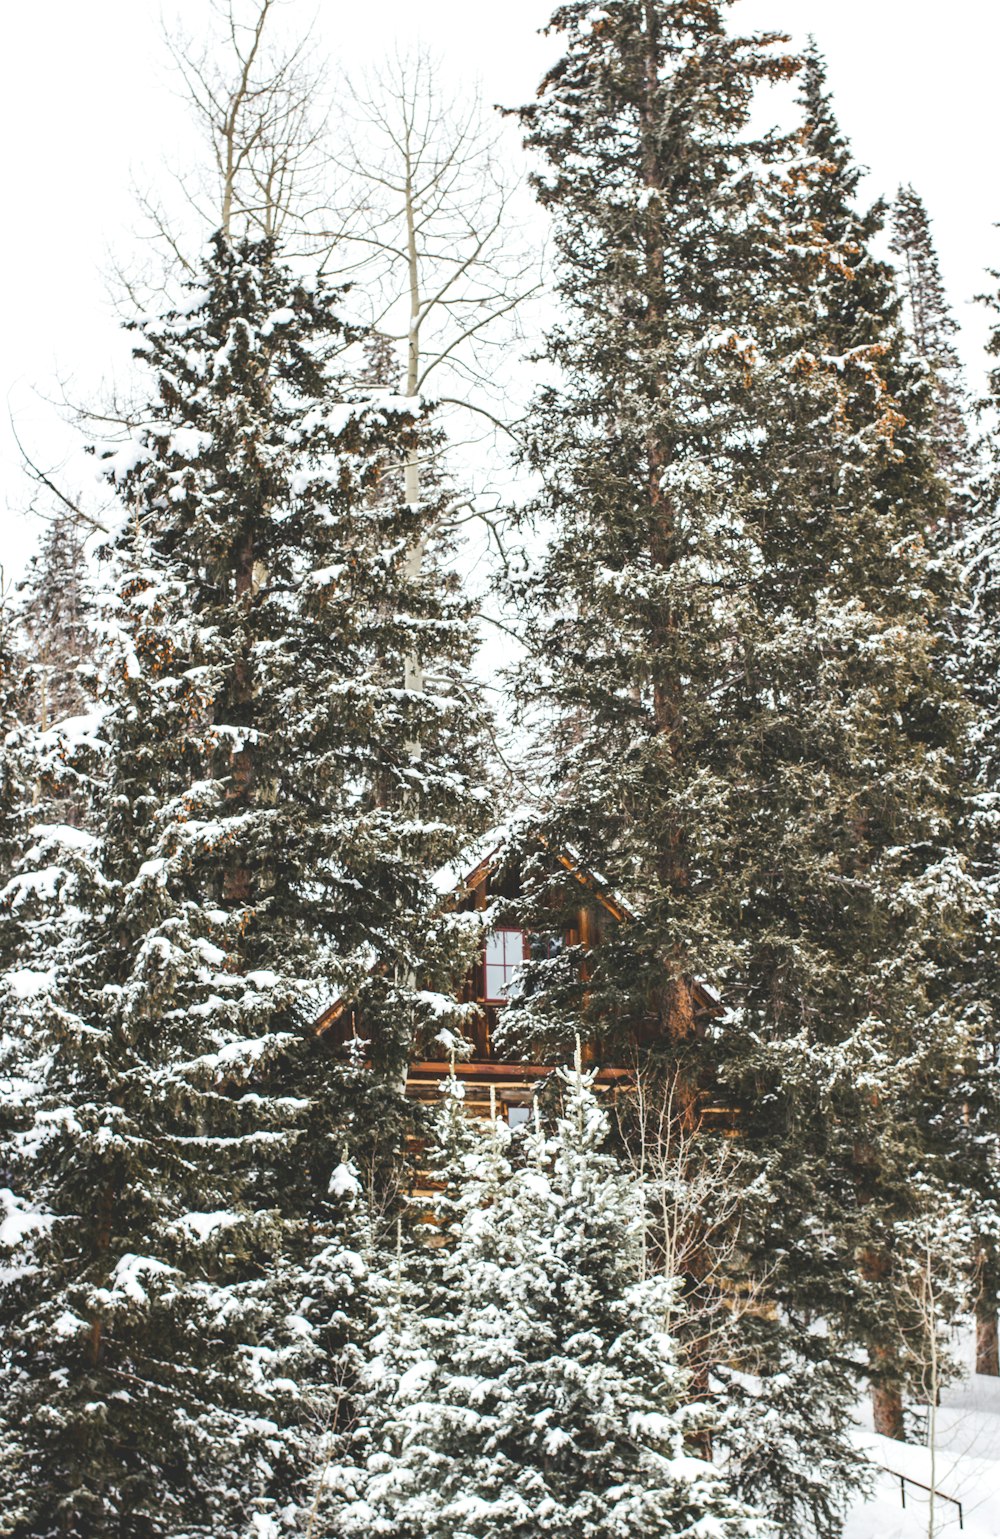 Fotografía de una casa marrón rodeada de verdes árboles del bosque